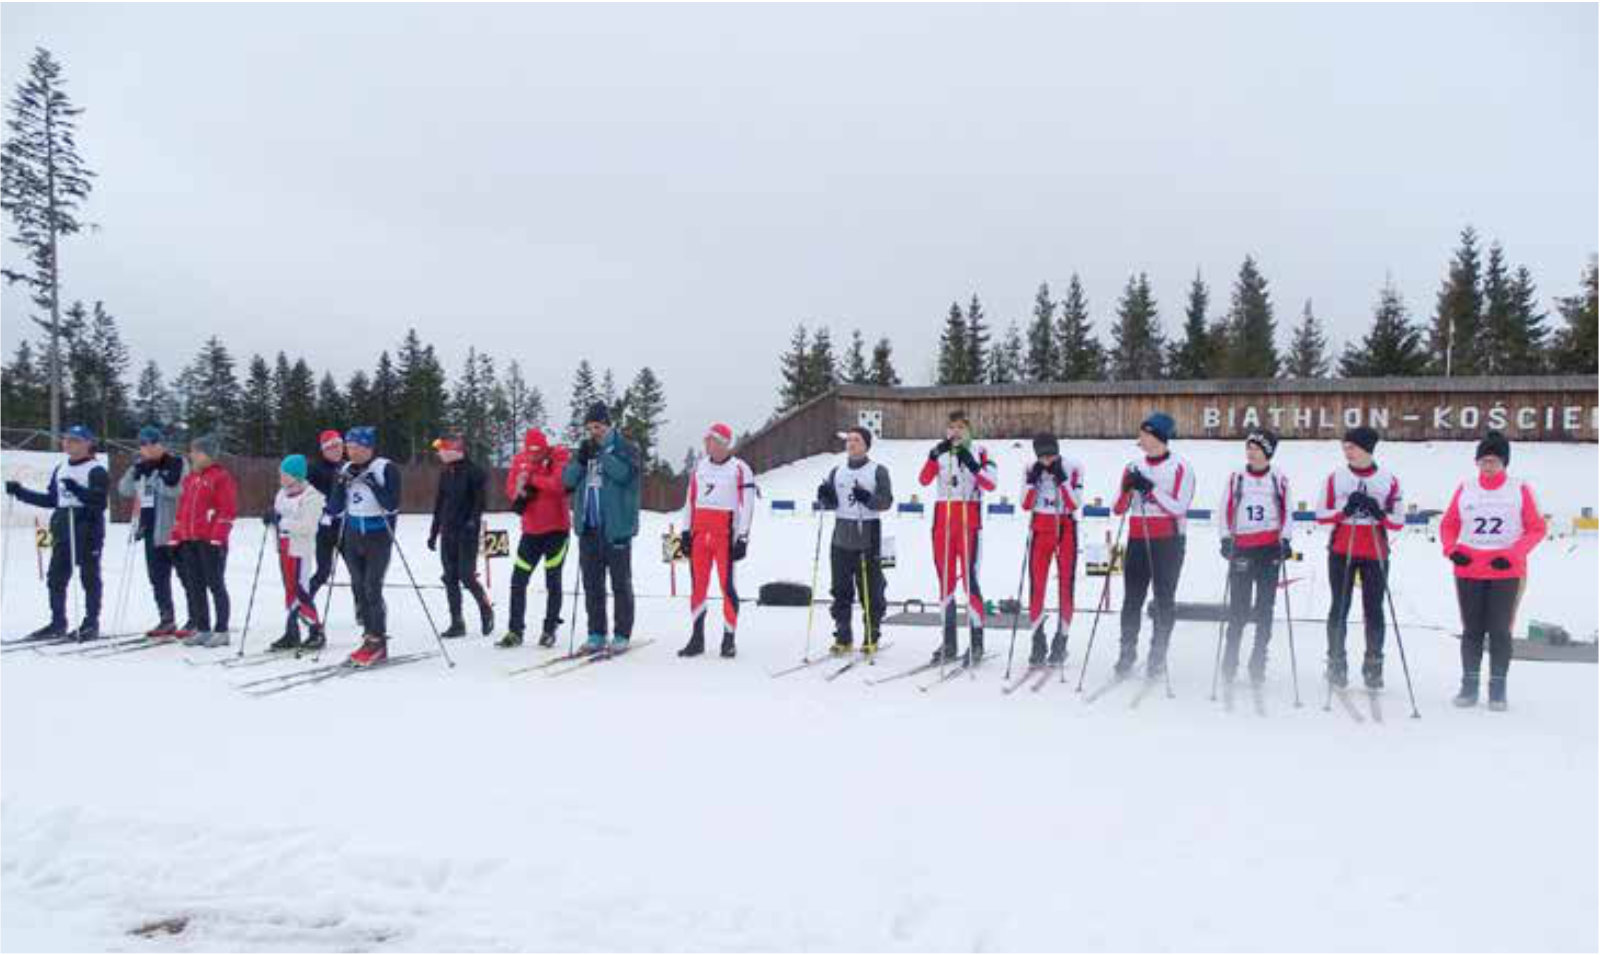 Grupa osób stojących na nartach w jednej lini